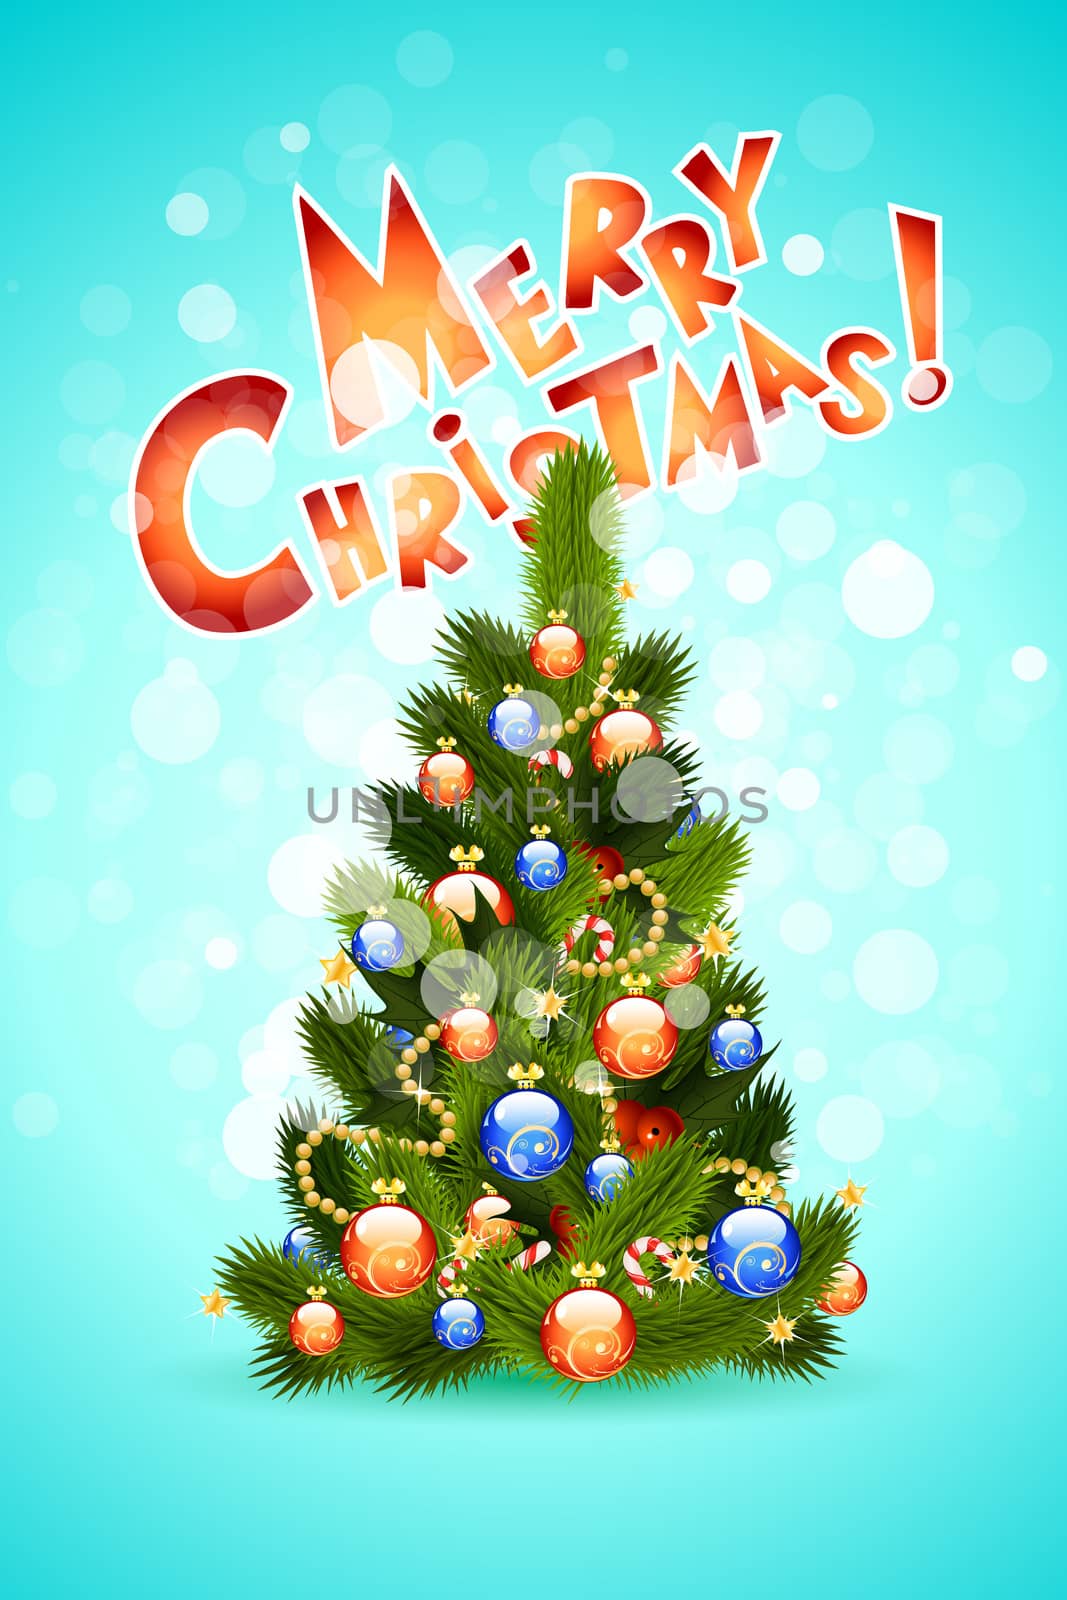 Christmas Card with Christmas tree